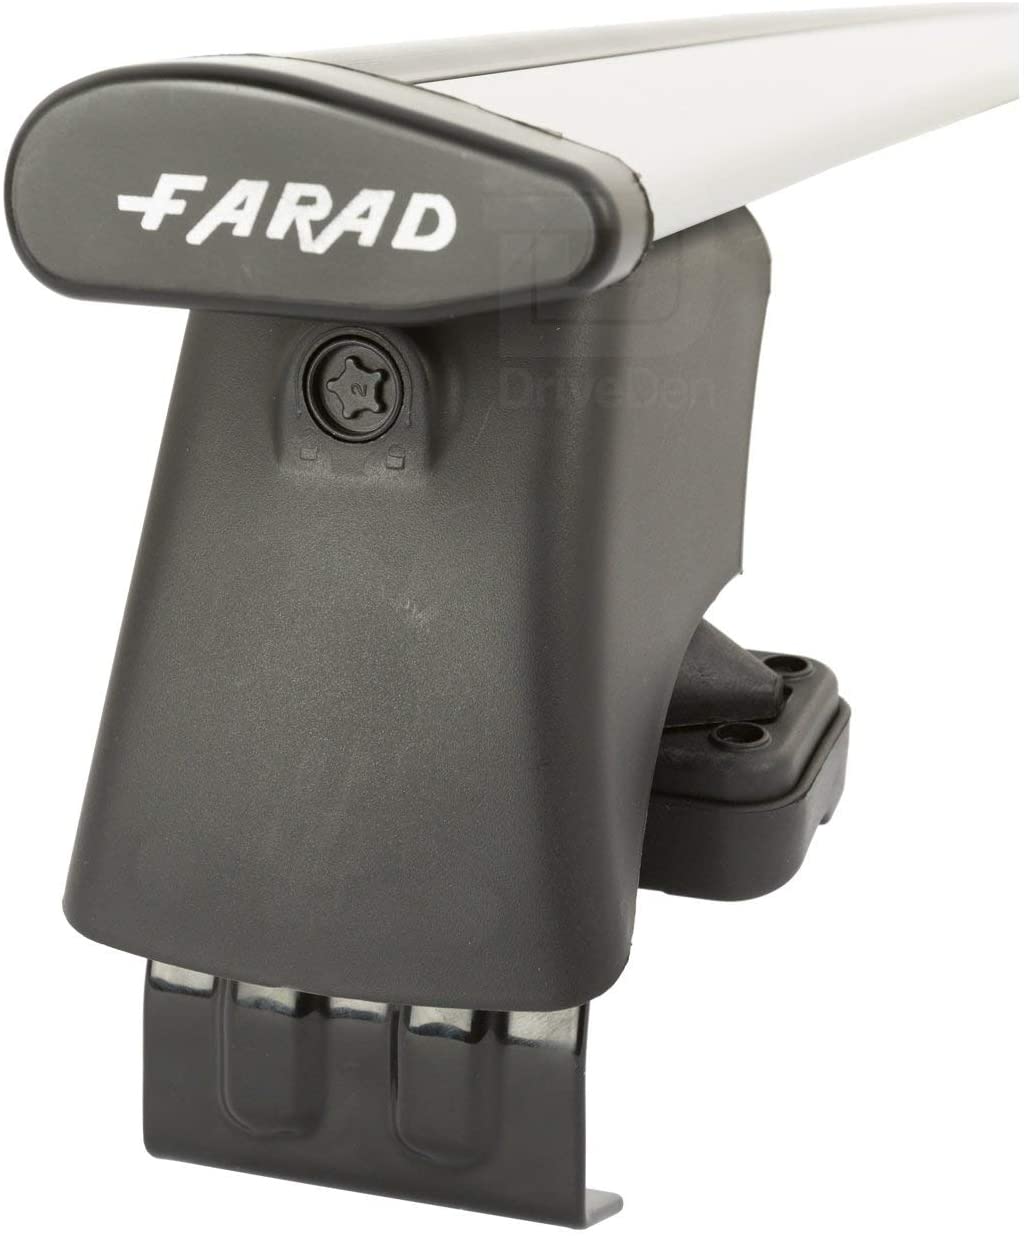 FARAD-Kit H2 per barre portatutto - Peugeot 3008 2016> (senza corrimano)